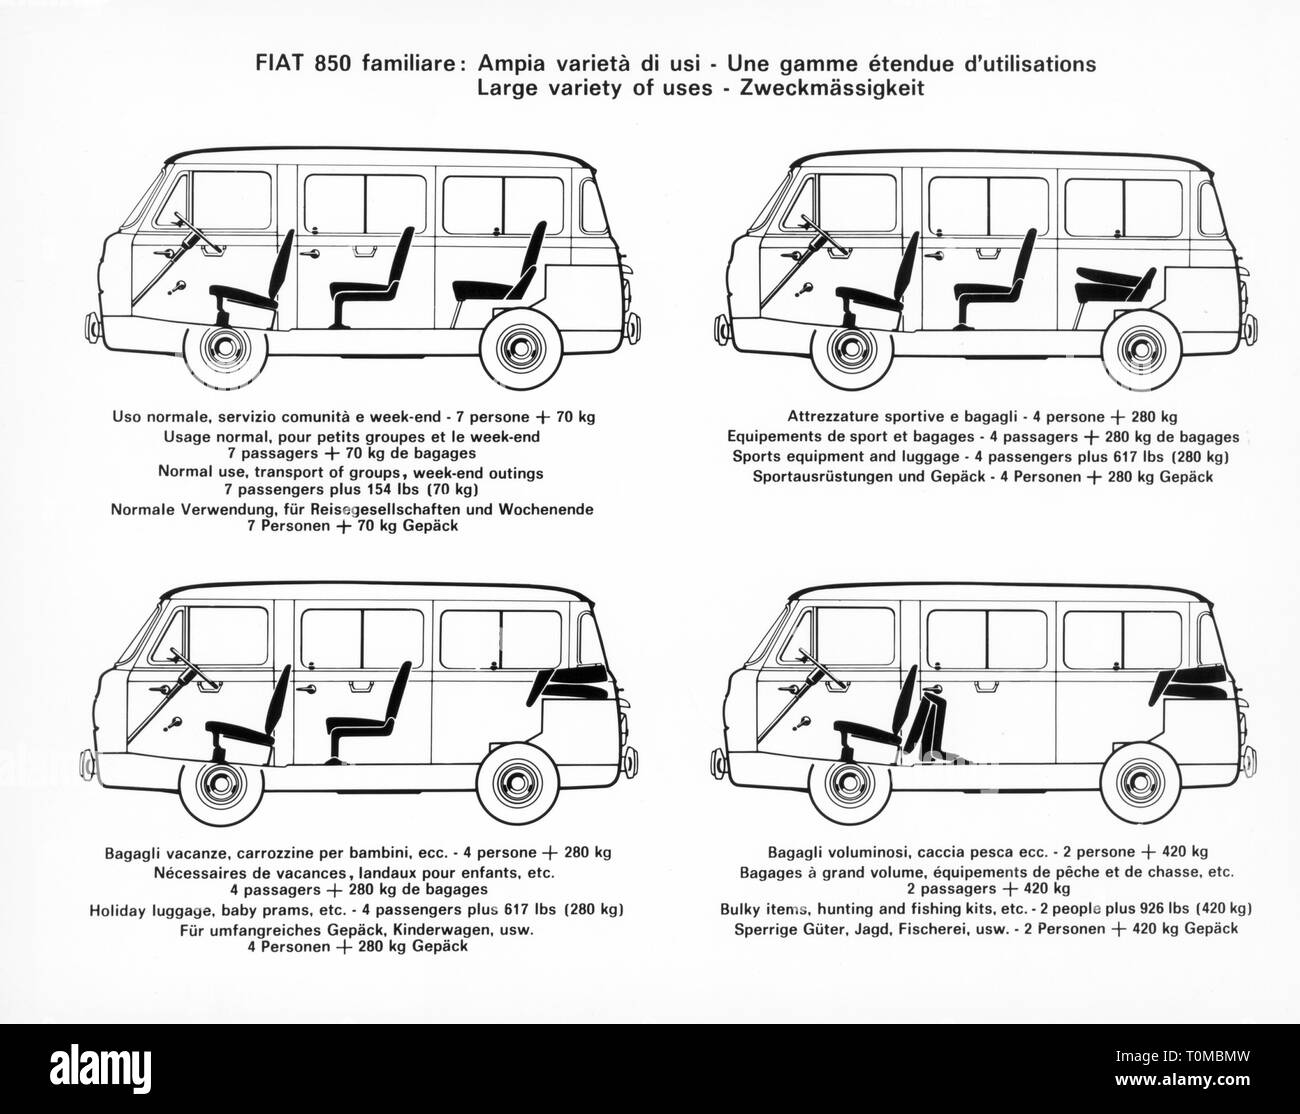 Trasporti / trasporto auto, varianti del veicolo, Fiat 850 familiare, grafica, utilità, 1964, Additional-Rights-Clearance-Info-Not-Available Foto Stock